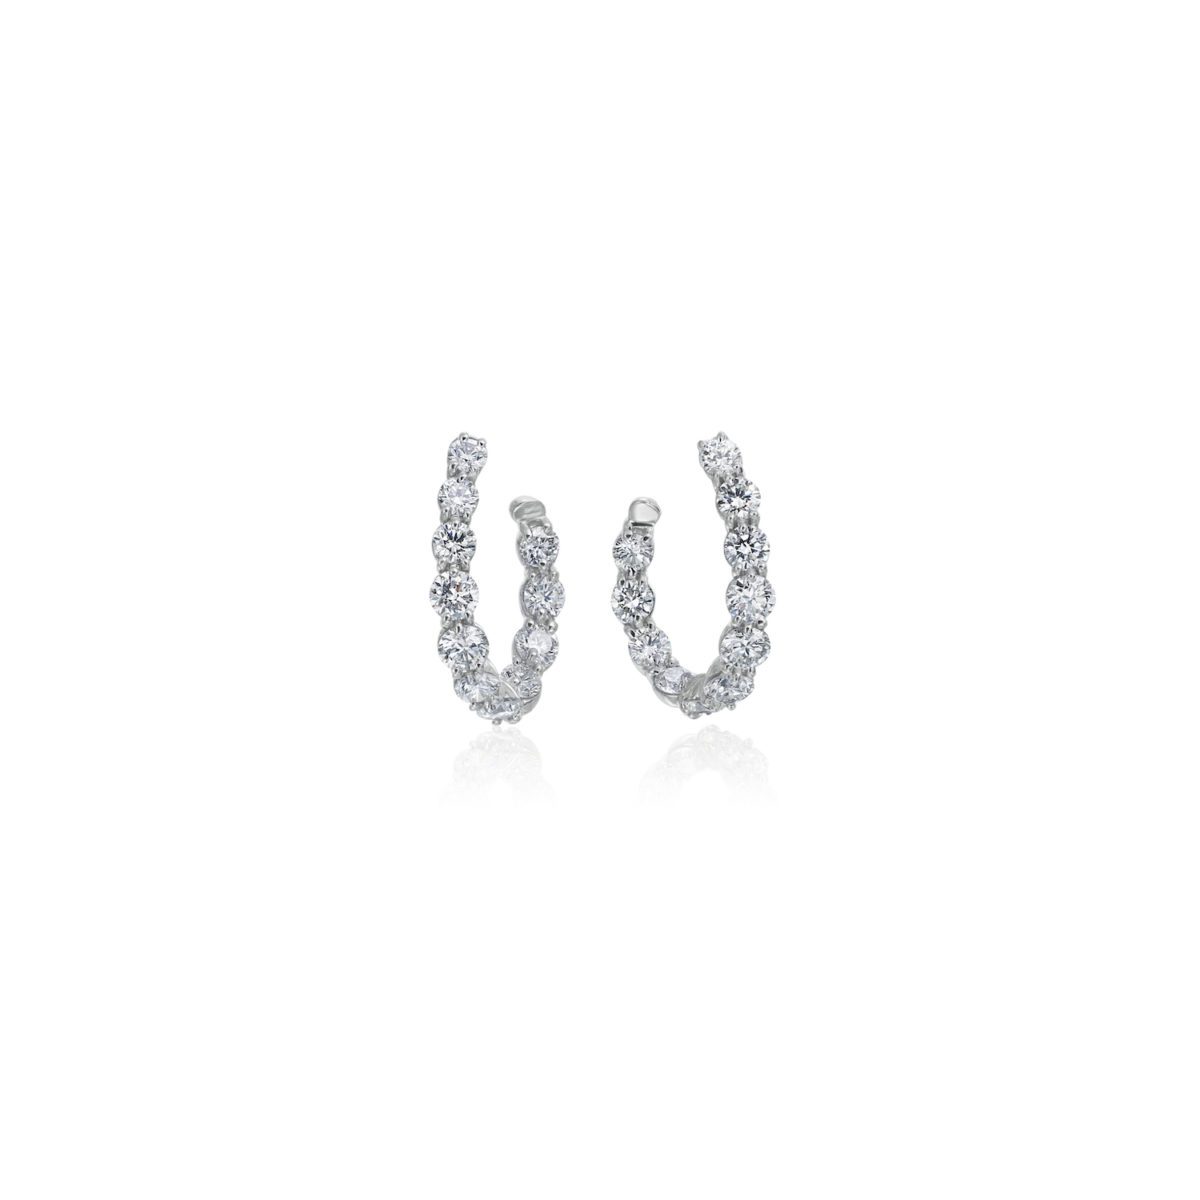 2.01 Carats Diamond J-Hoop Earrings in White Gold